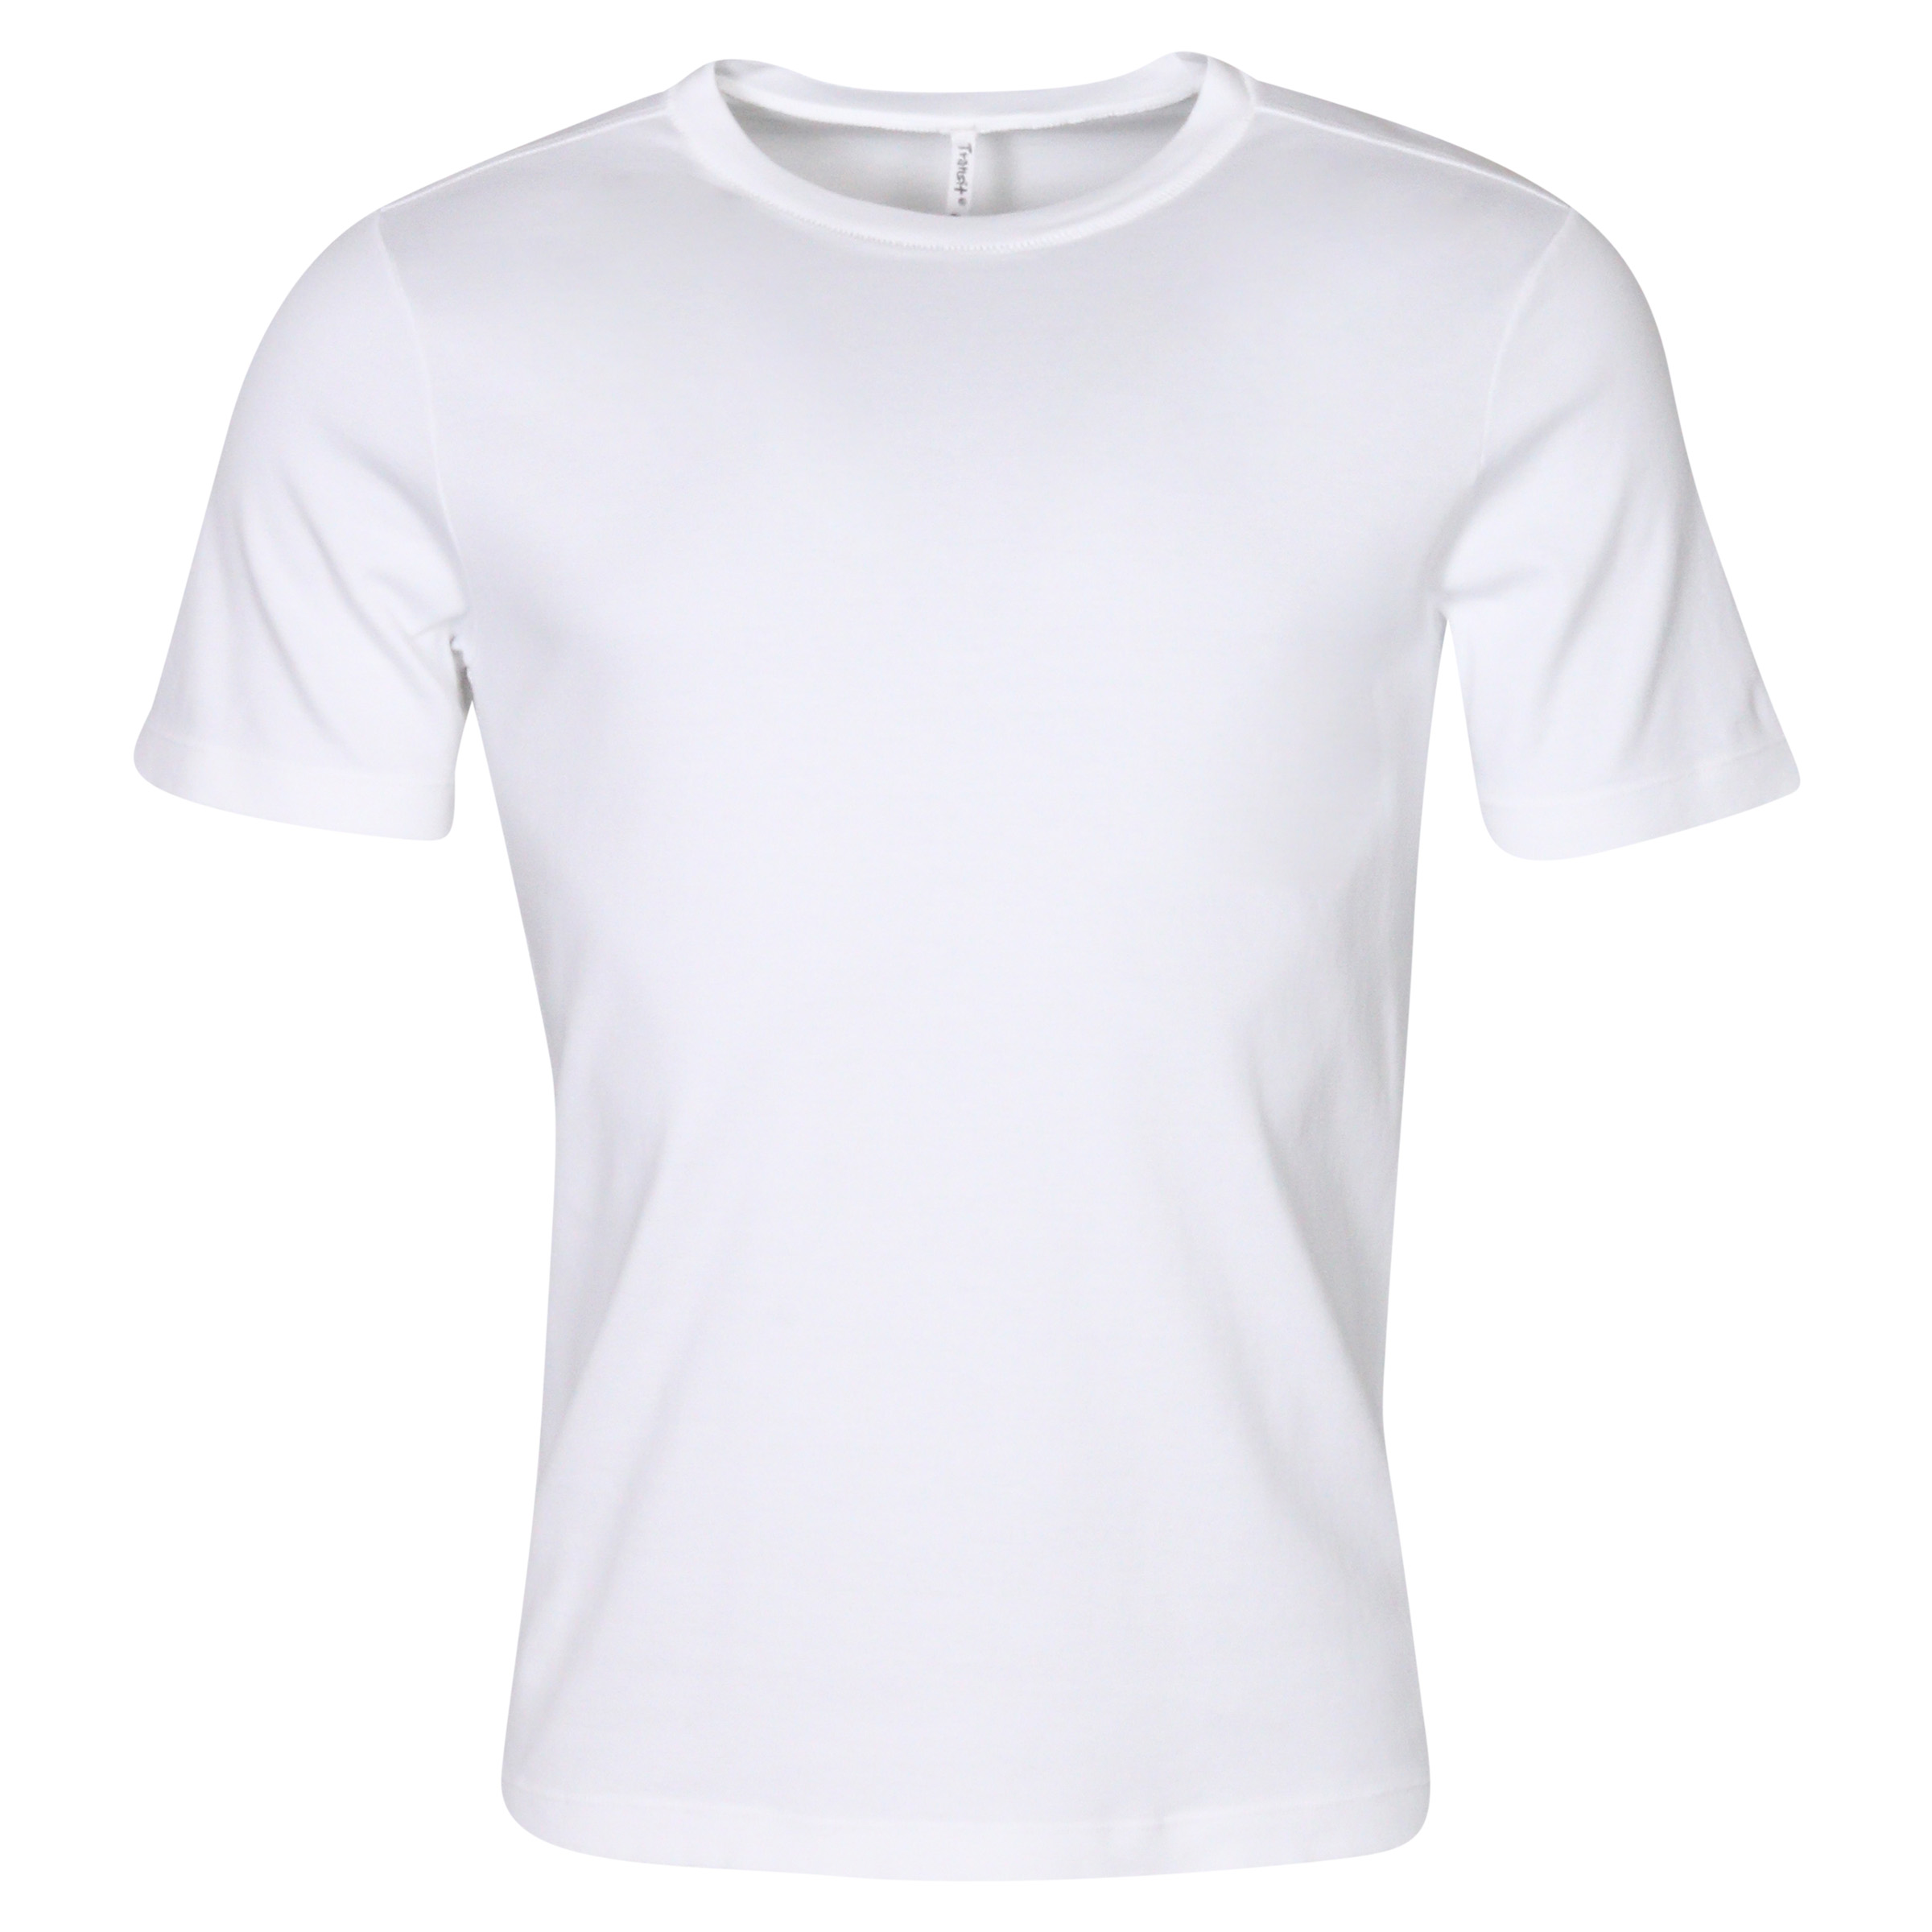 Transit Uomo Cotton T-Shirt Offwhite L